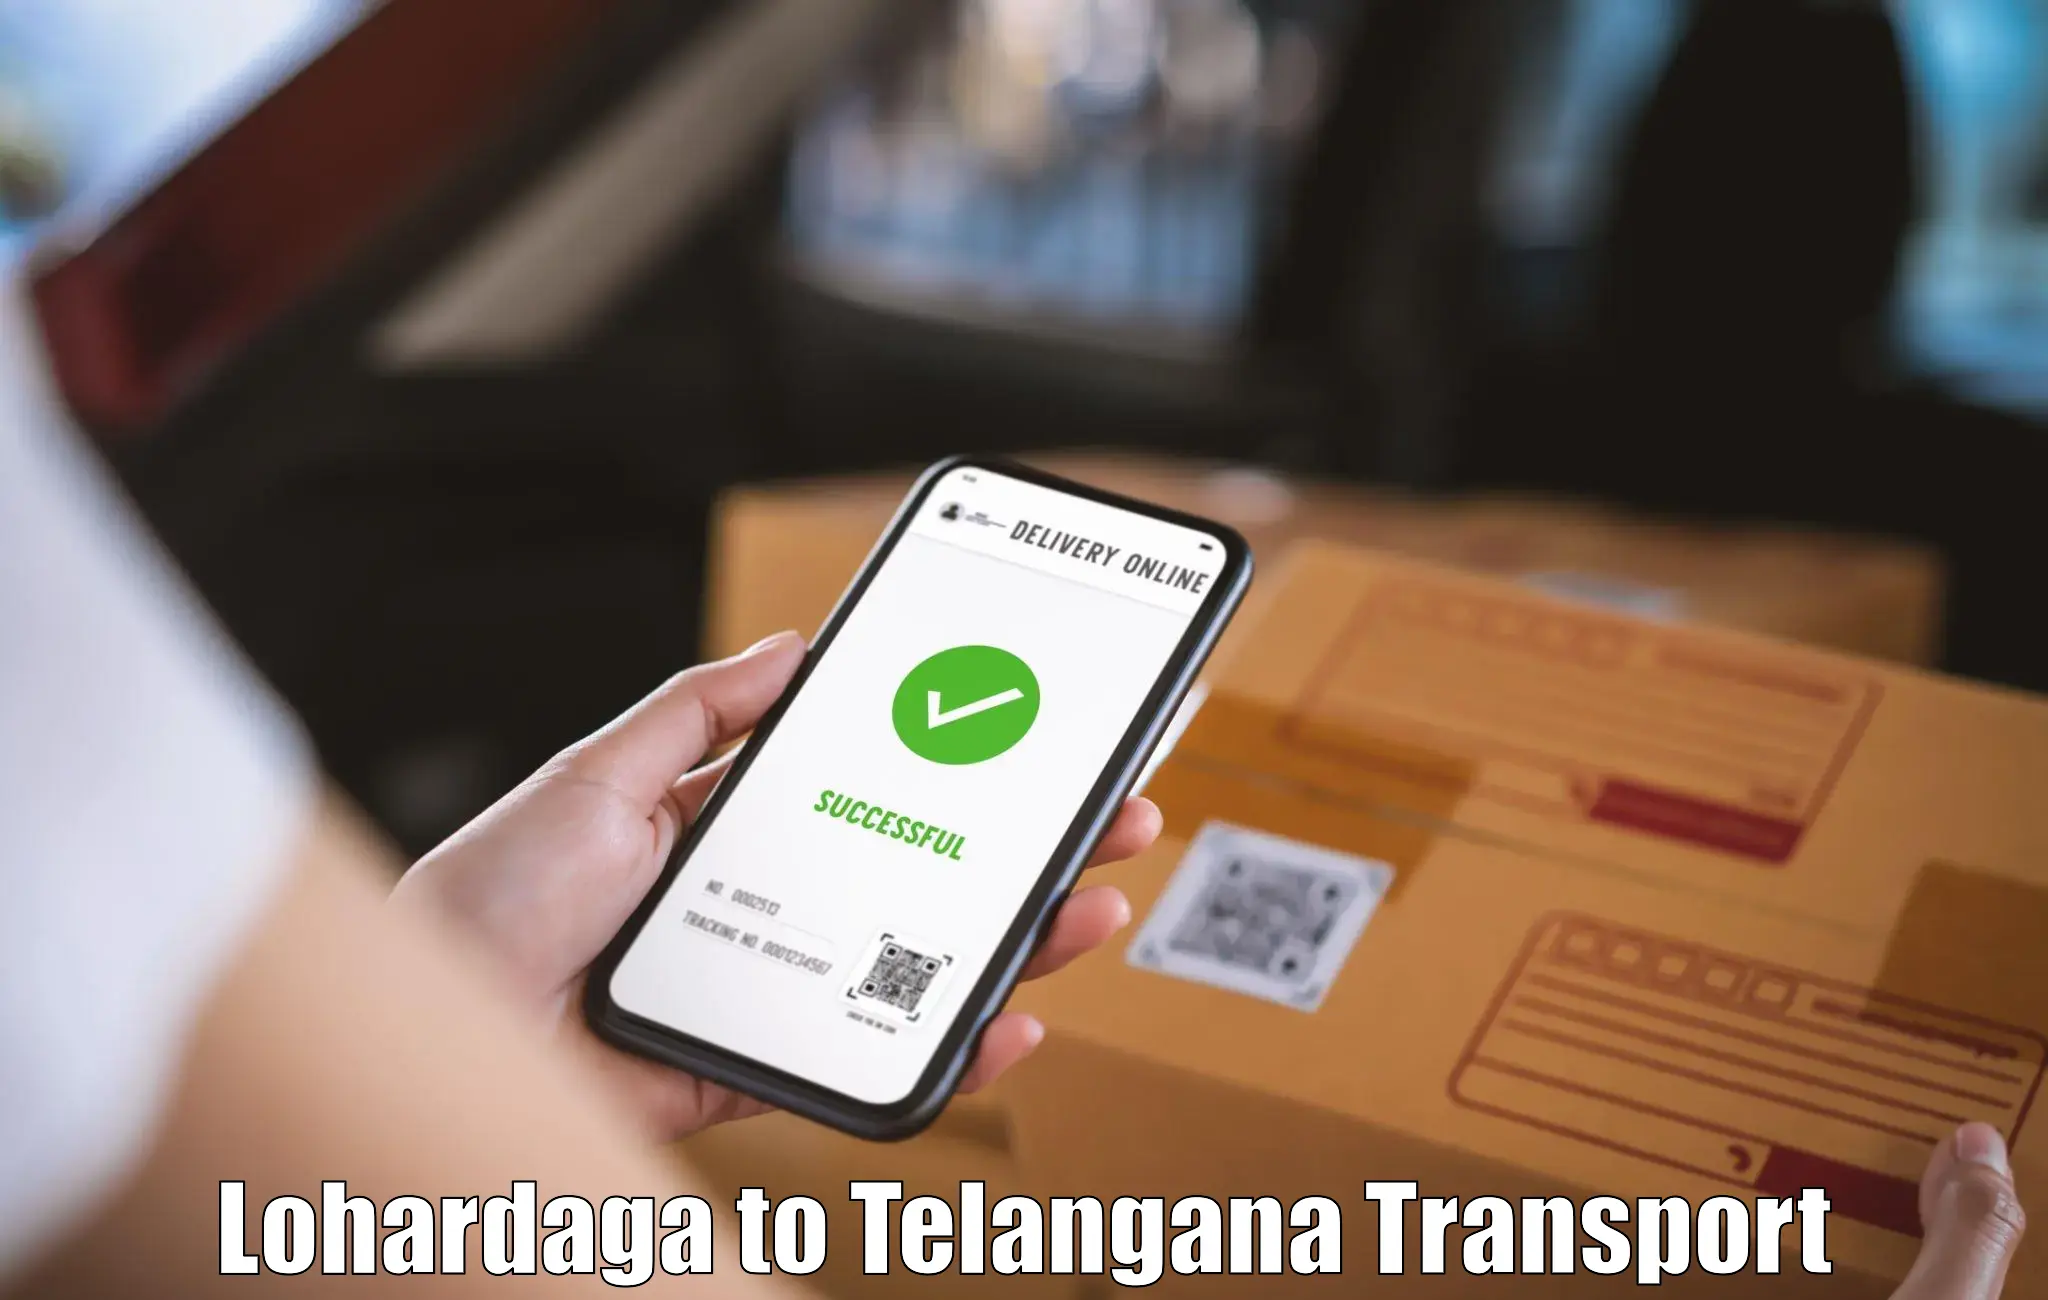 Scooty transport charges Lohardaga to IIT Hyderabad